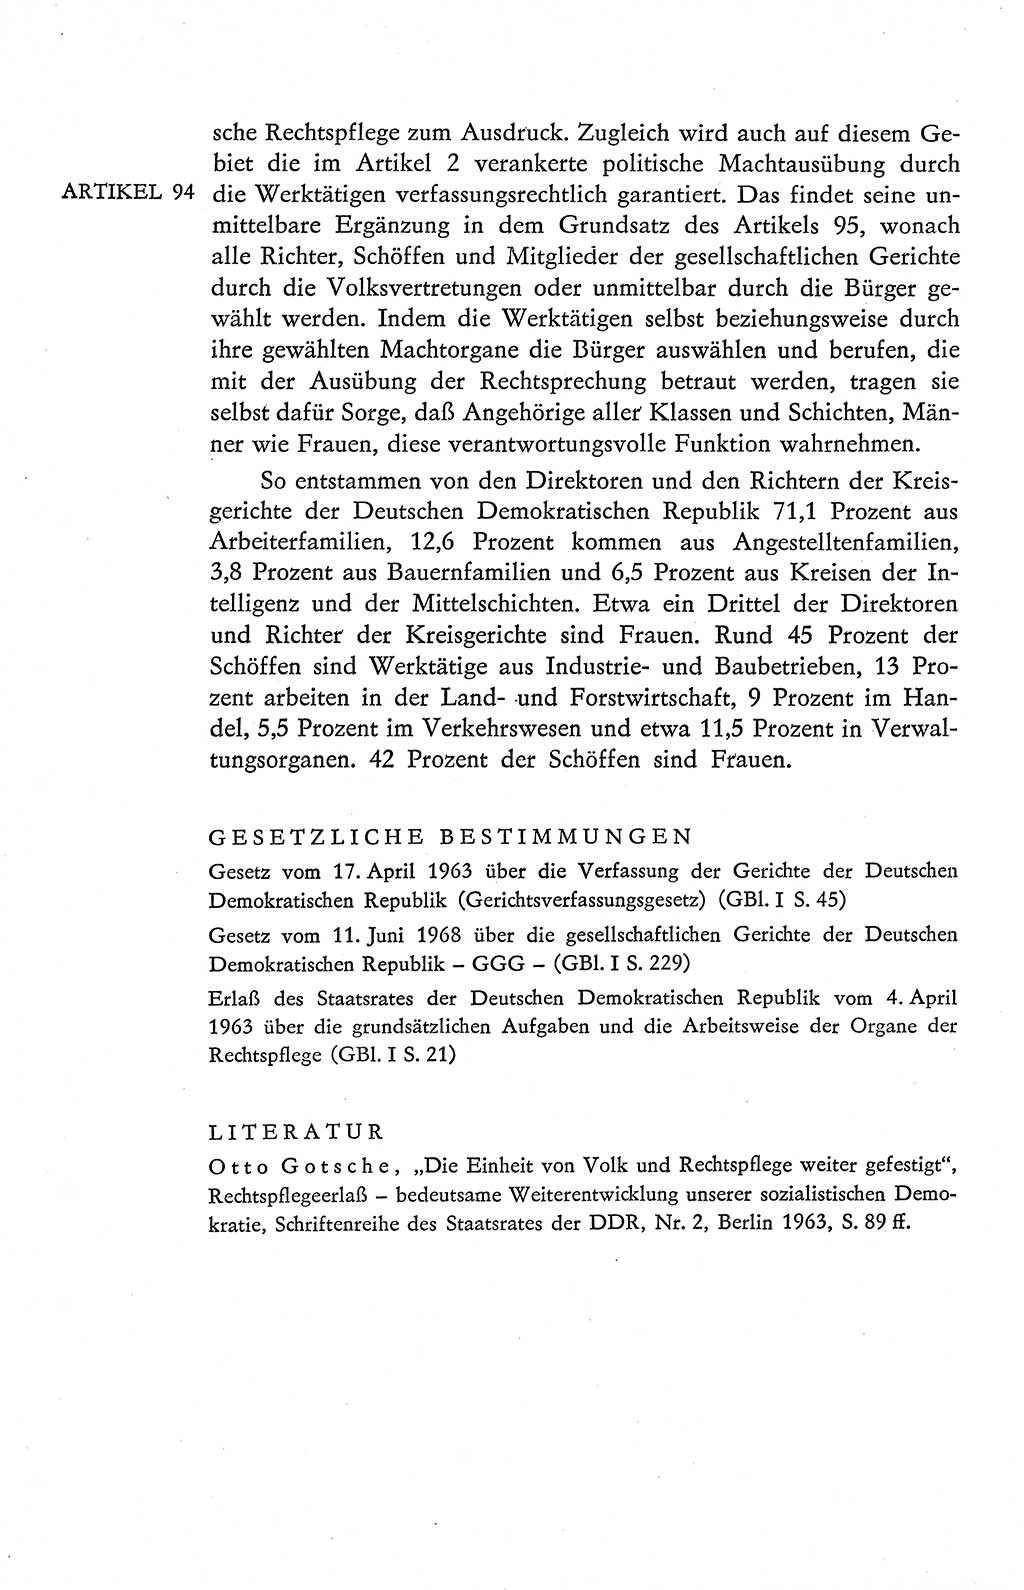 Verfassung der Deutschen Demokratischen Republik (DDR), Dokumente, Kommentar 1969, Band 2, Seite 454 (Verf. DDR Dok. Komm. 1969, Bd. 2, S. 454)